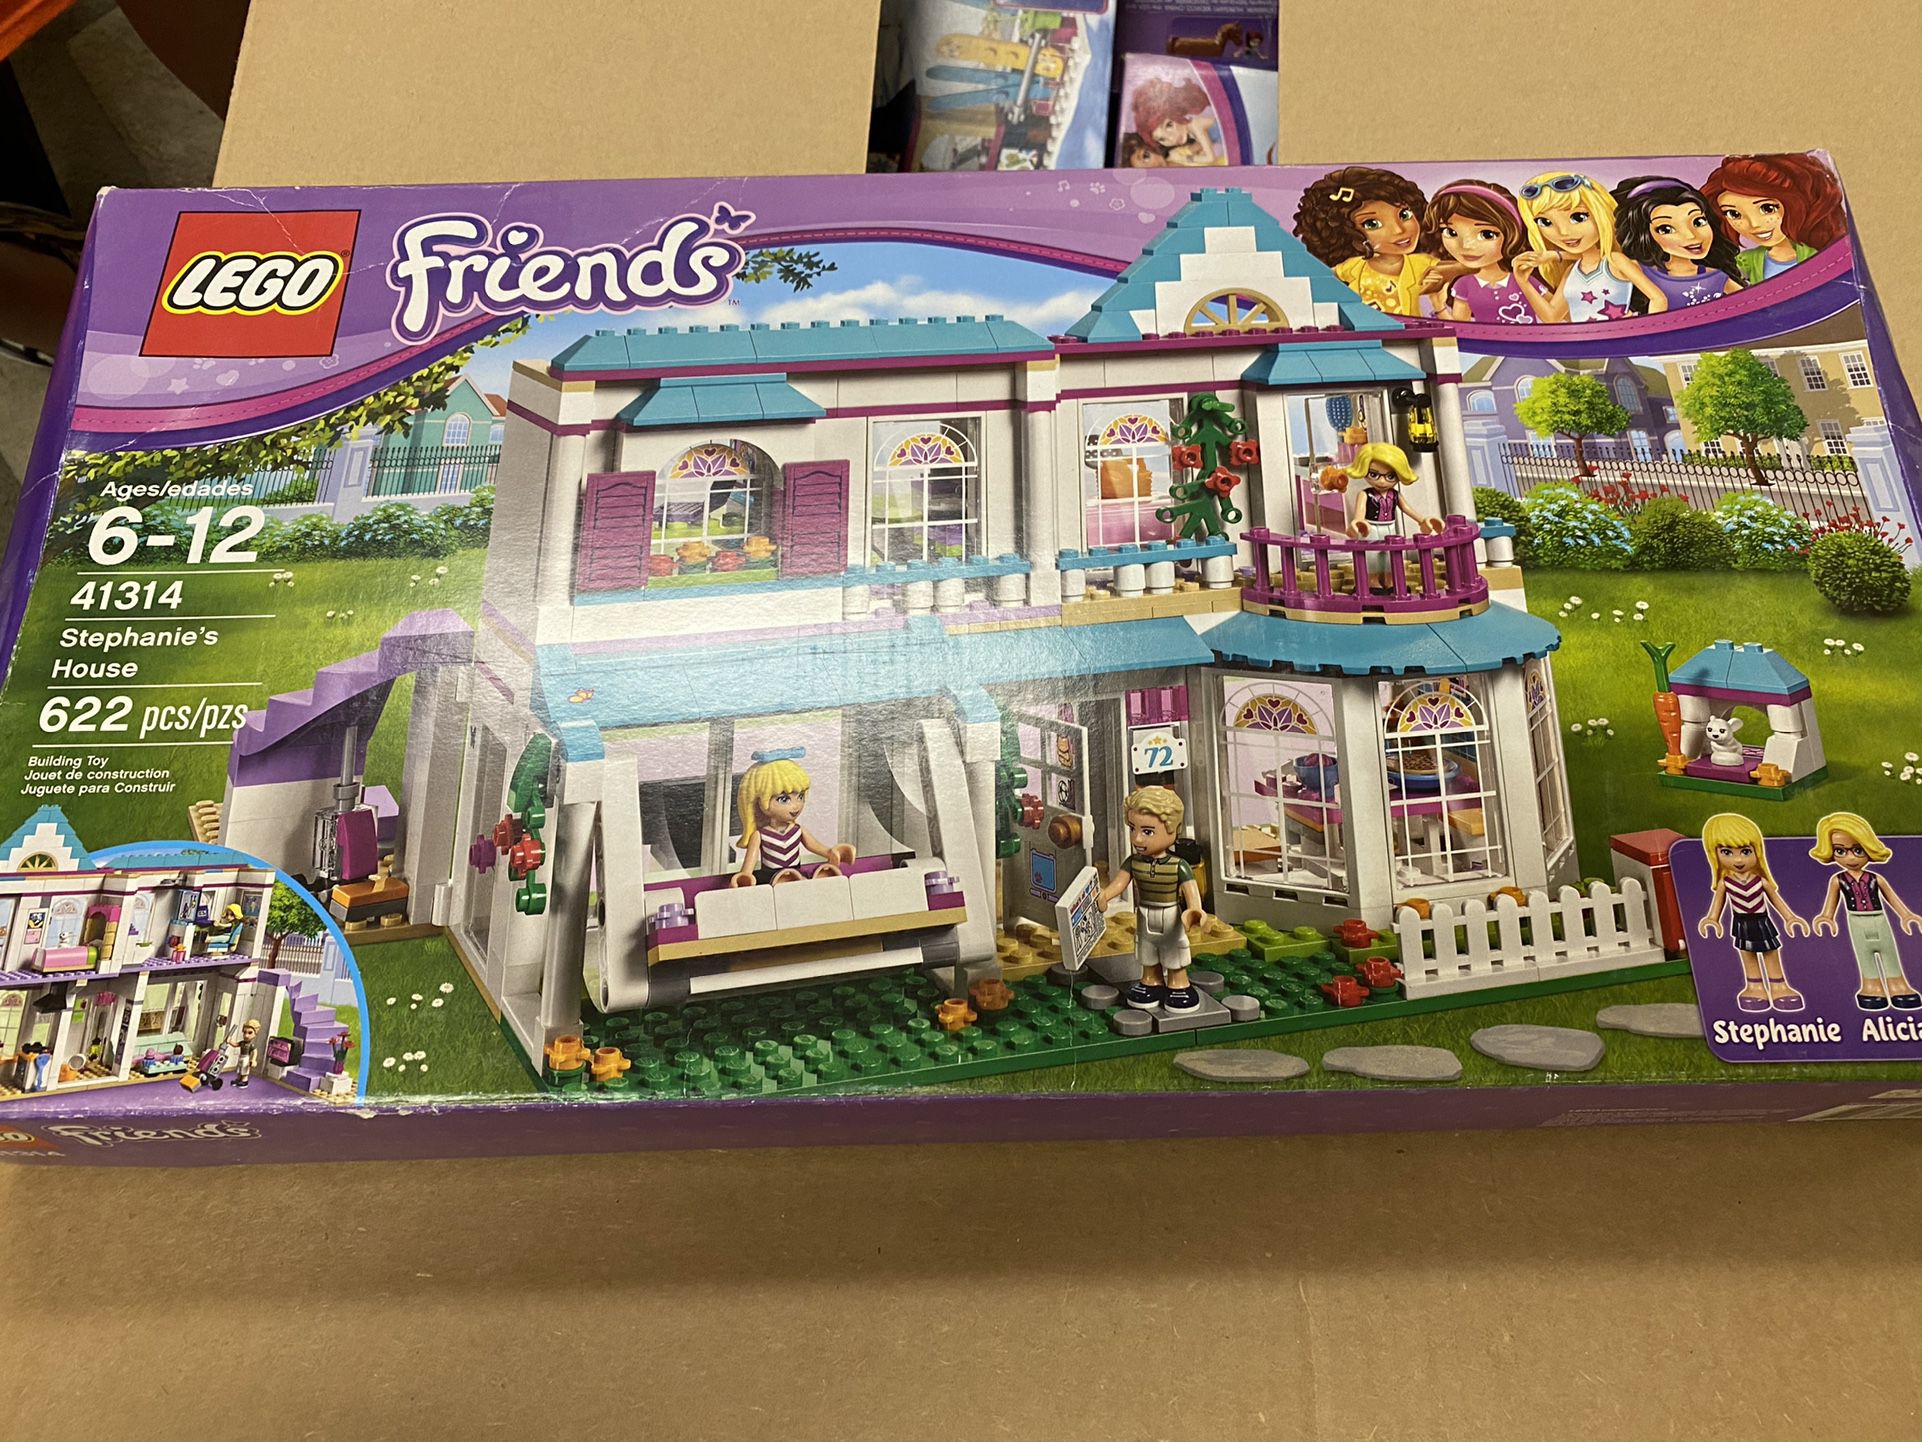 11 Lego Friends and 1 Lego Disney